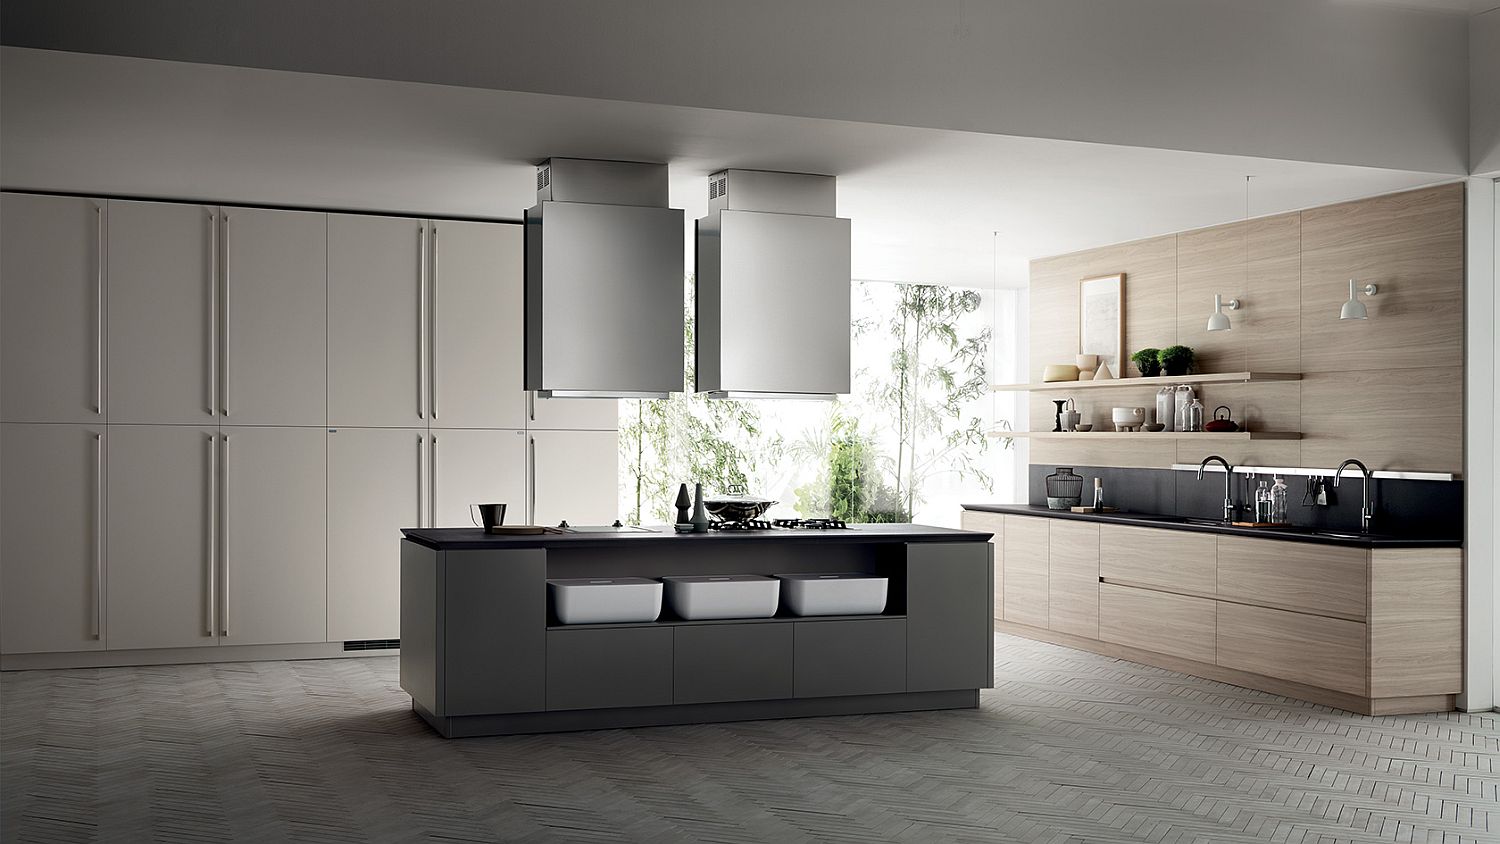 Gray and wood minimal kitchen ideas